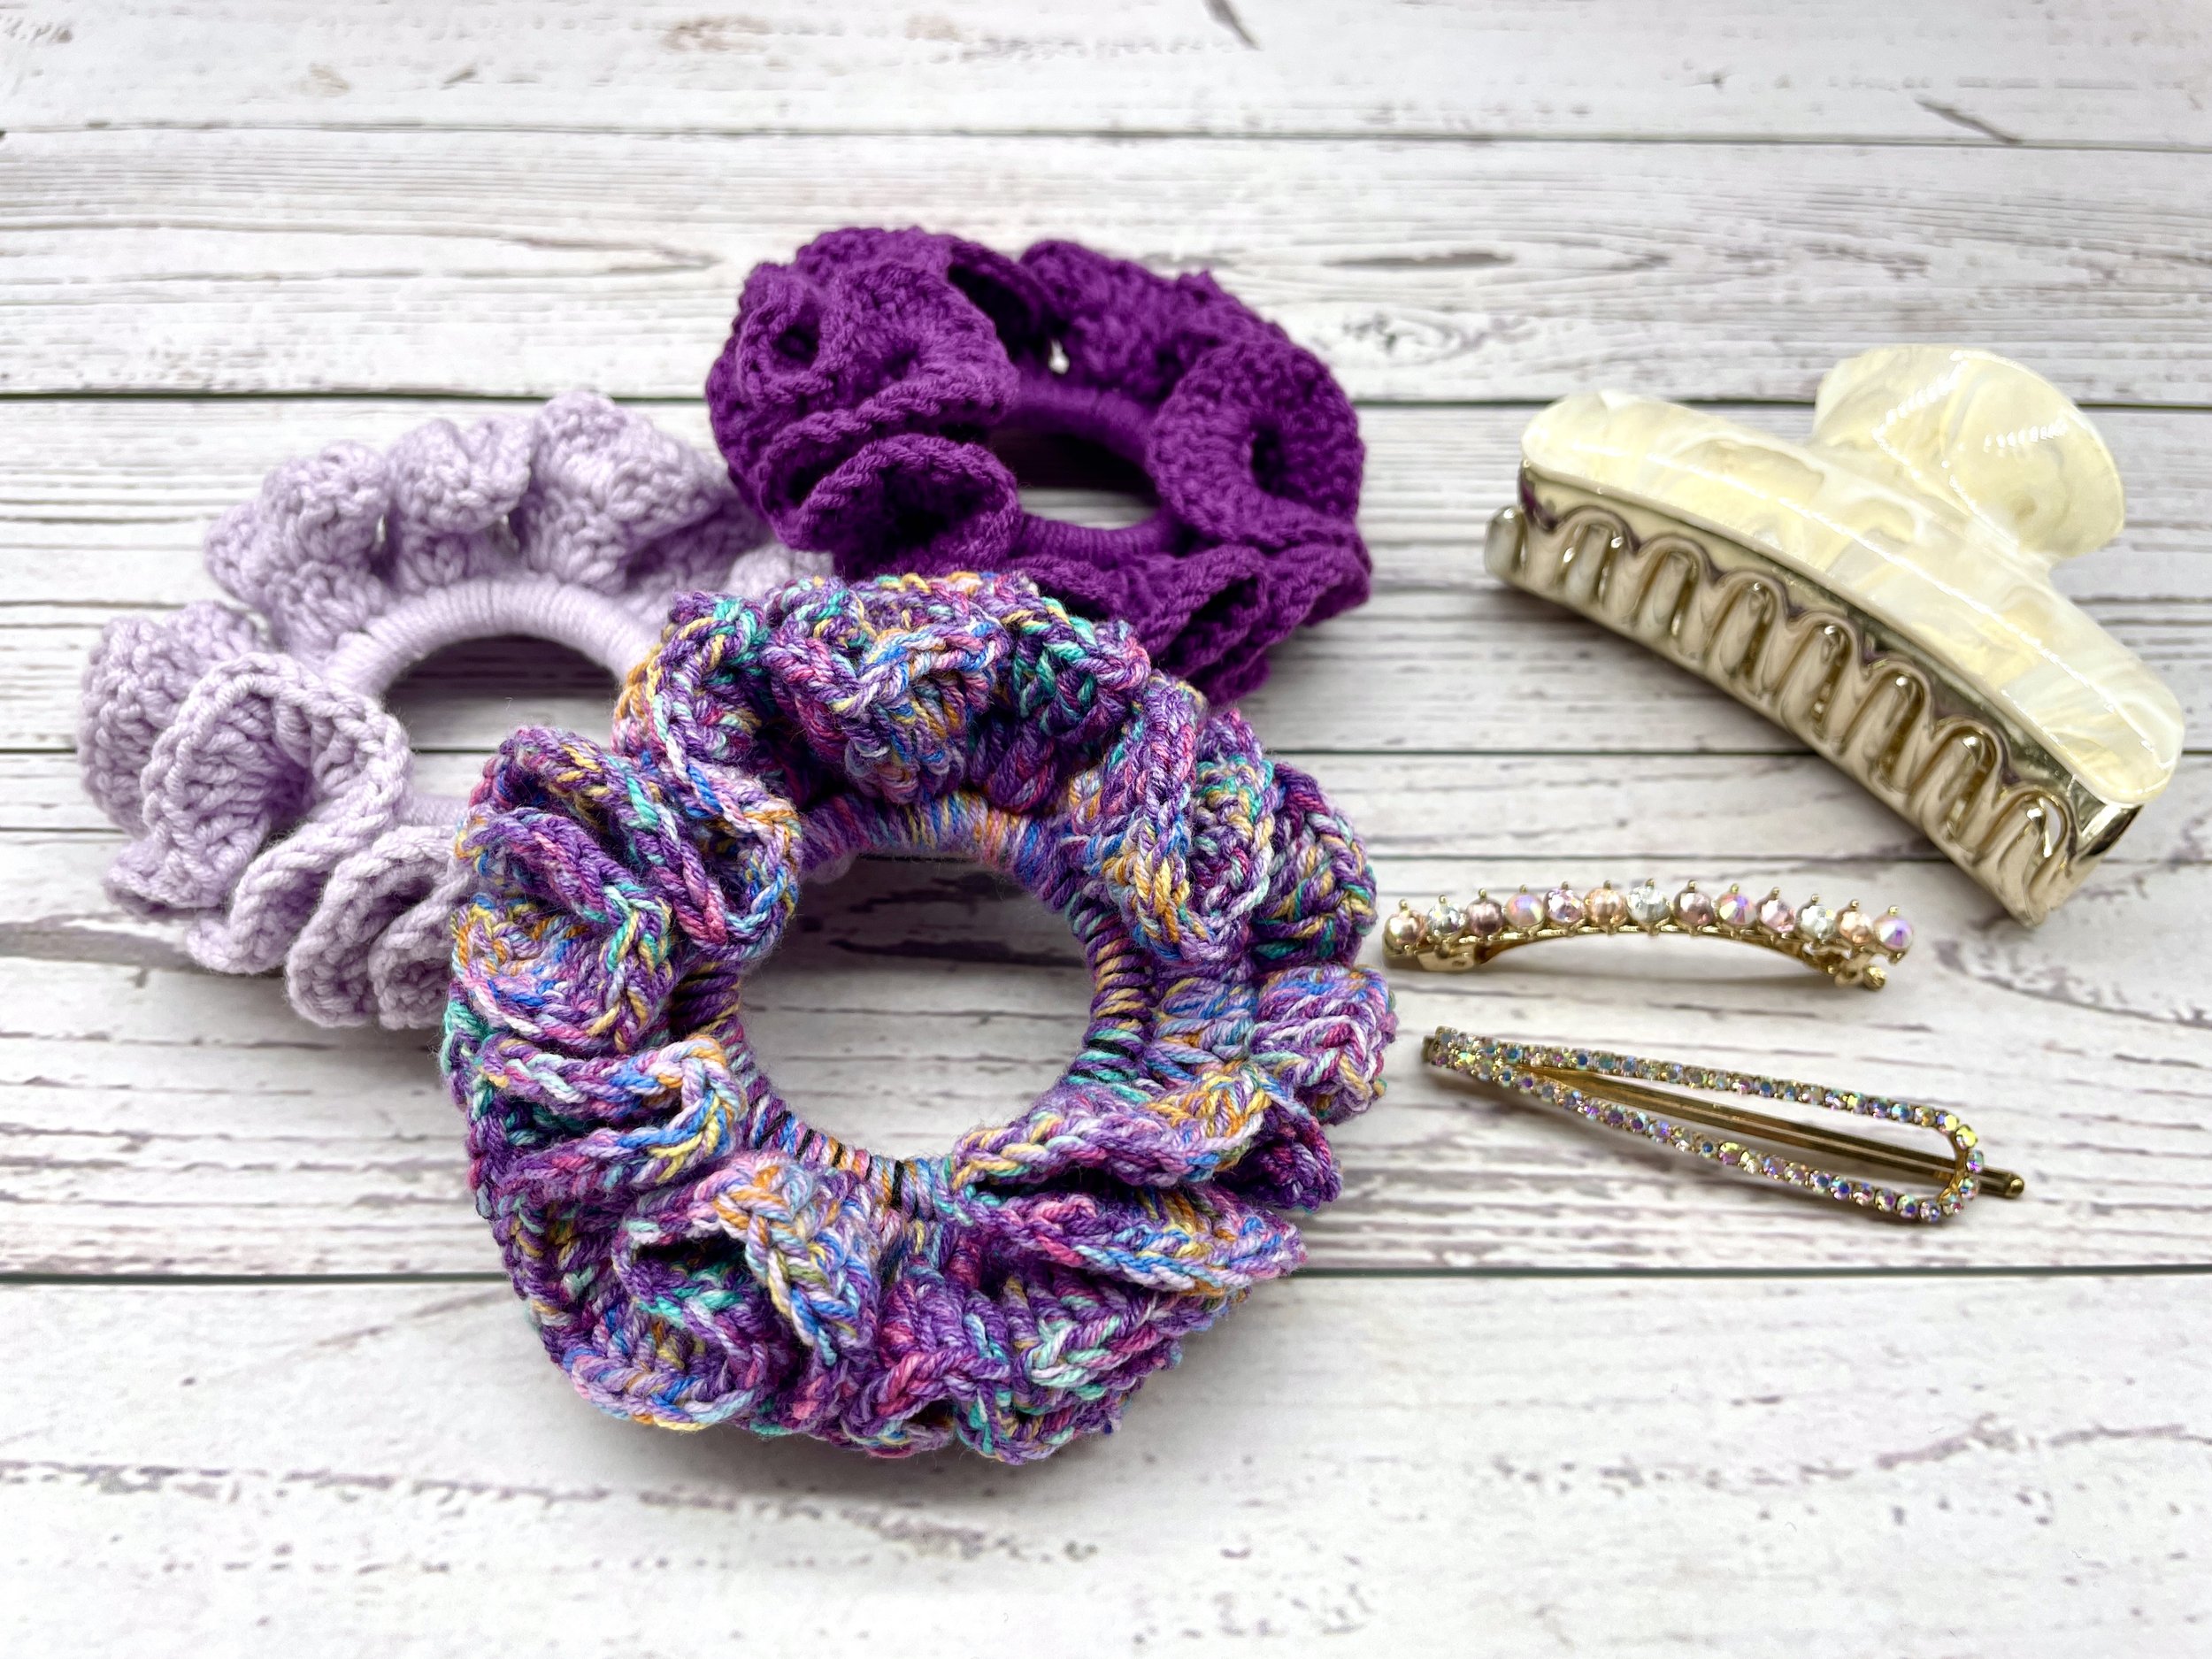 April 17 - Dreamee Crochet - Free Crochet Scrunchie Pattern (2).JPG